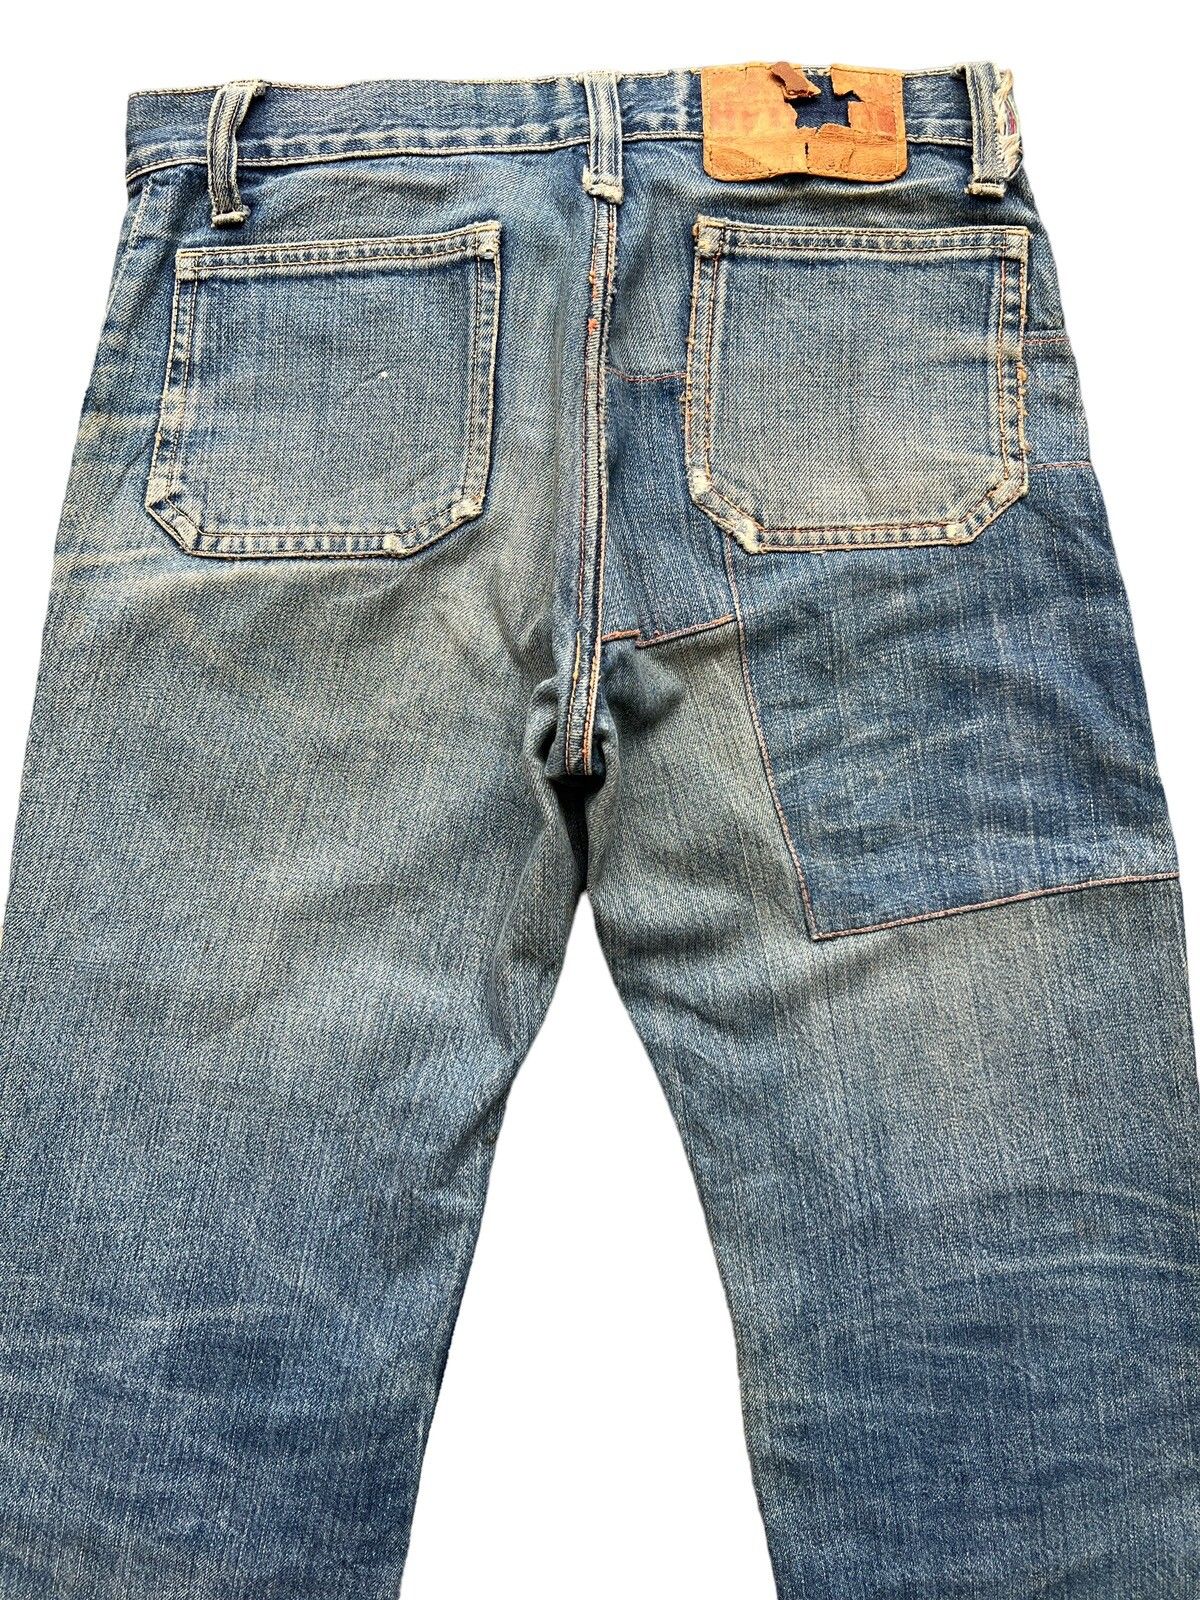 Hype - Vintage 80s Edwin Bushpant Patchwork Distressed Flare Jeans - 5